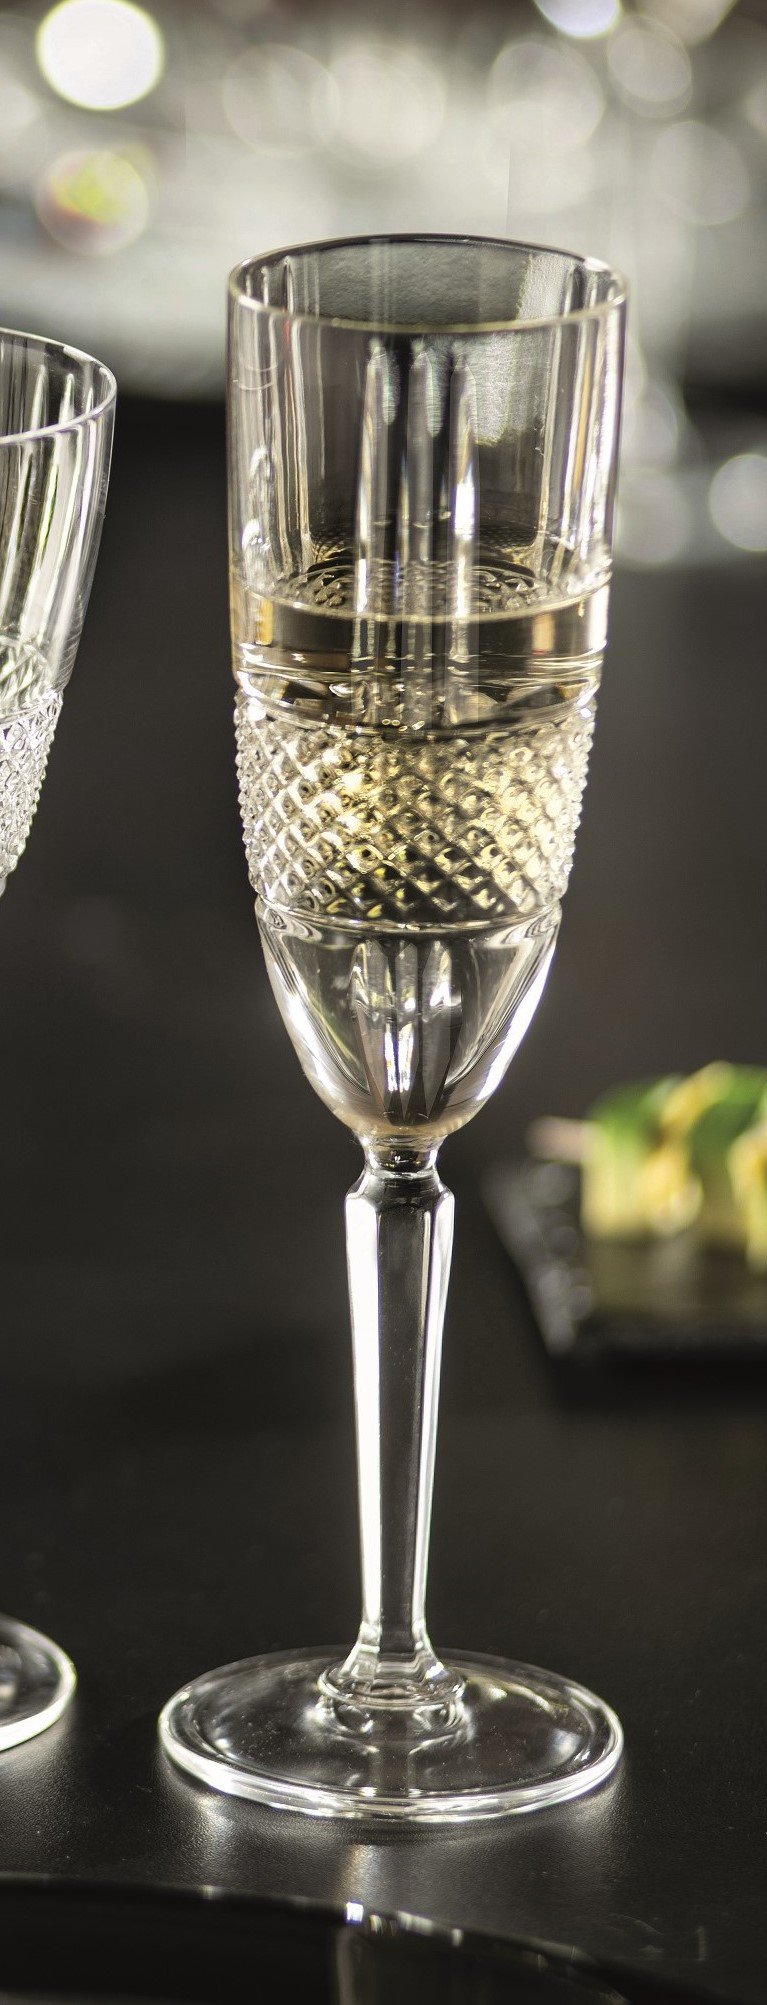 Champagne Flute 19 Cl Brillante - Set Of 6